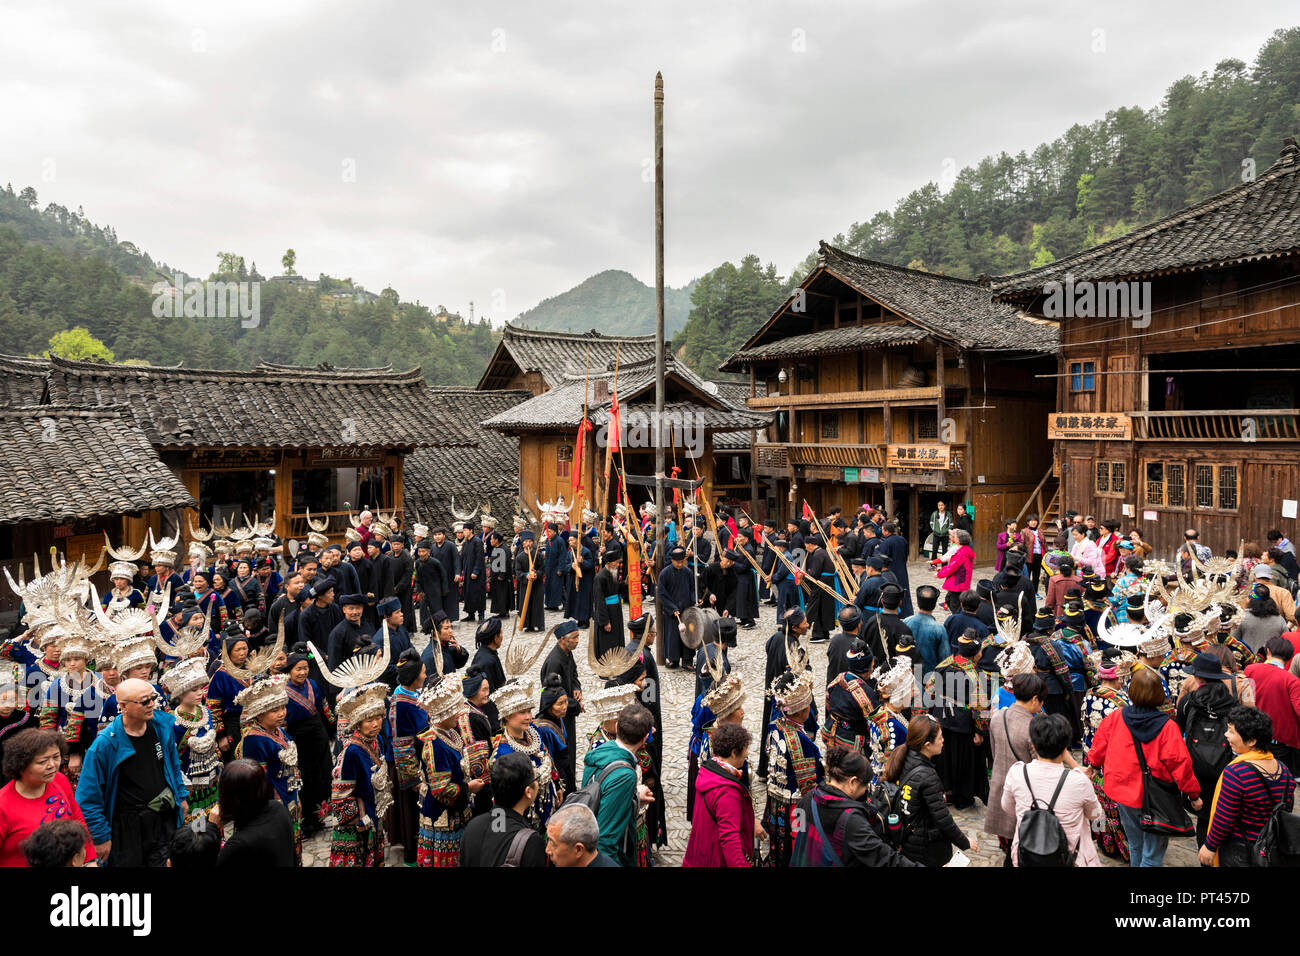 Tanzen unter den Miao Menschen in der Langde Dorf, Guizhou, China Stockfoto